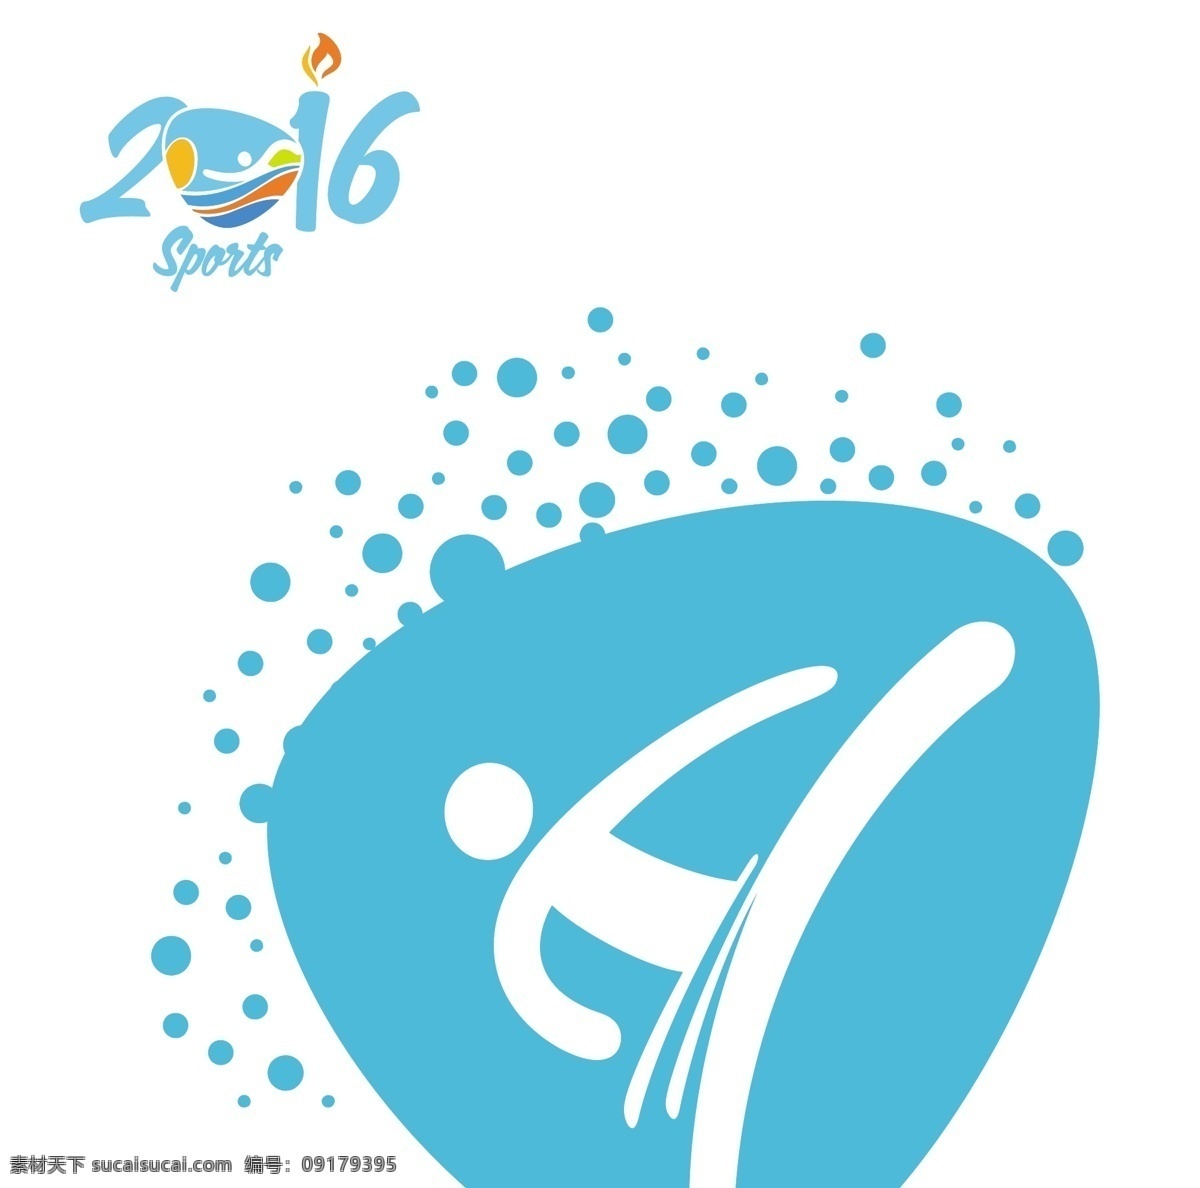 2016 巴西 奥运 运动 项目 2016巴西 运动项目 白色